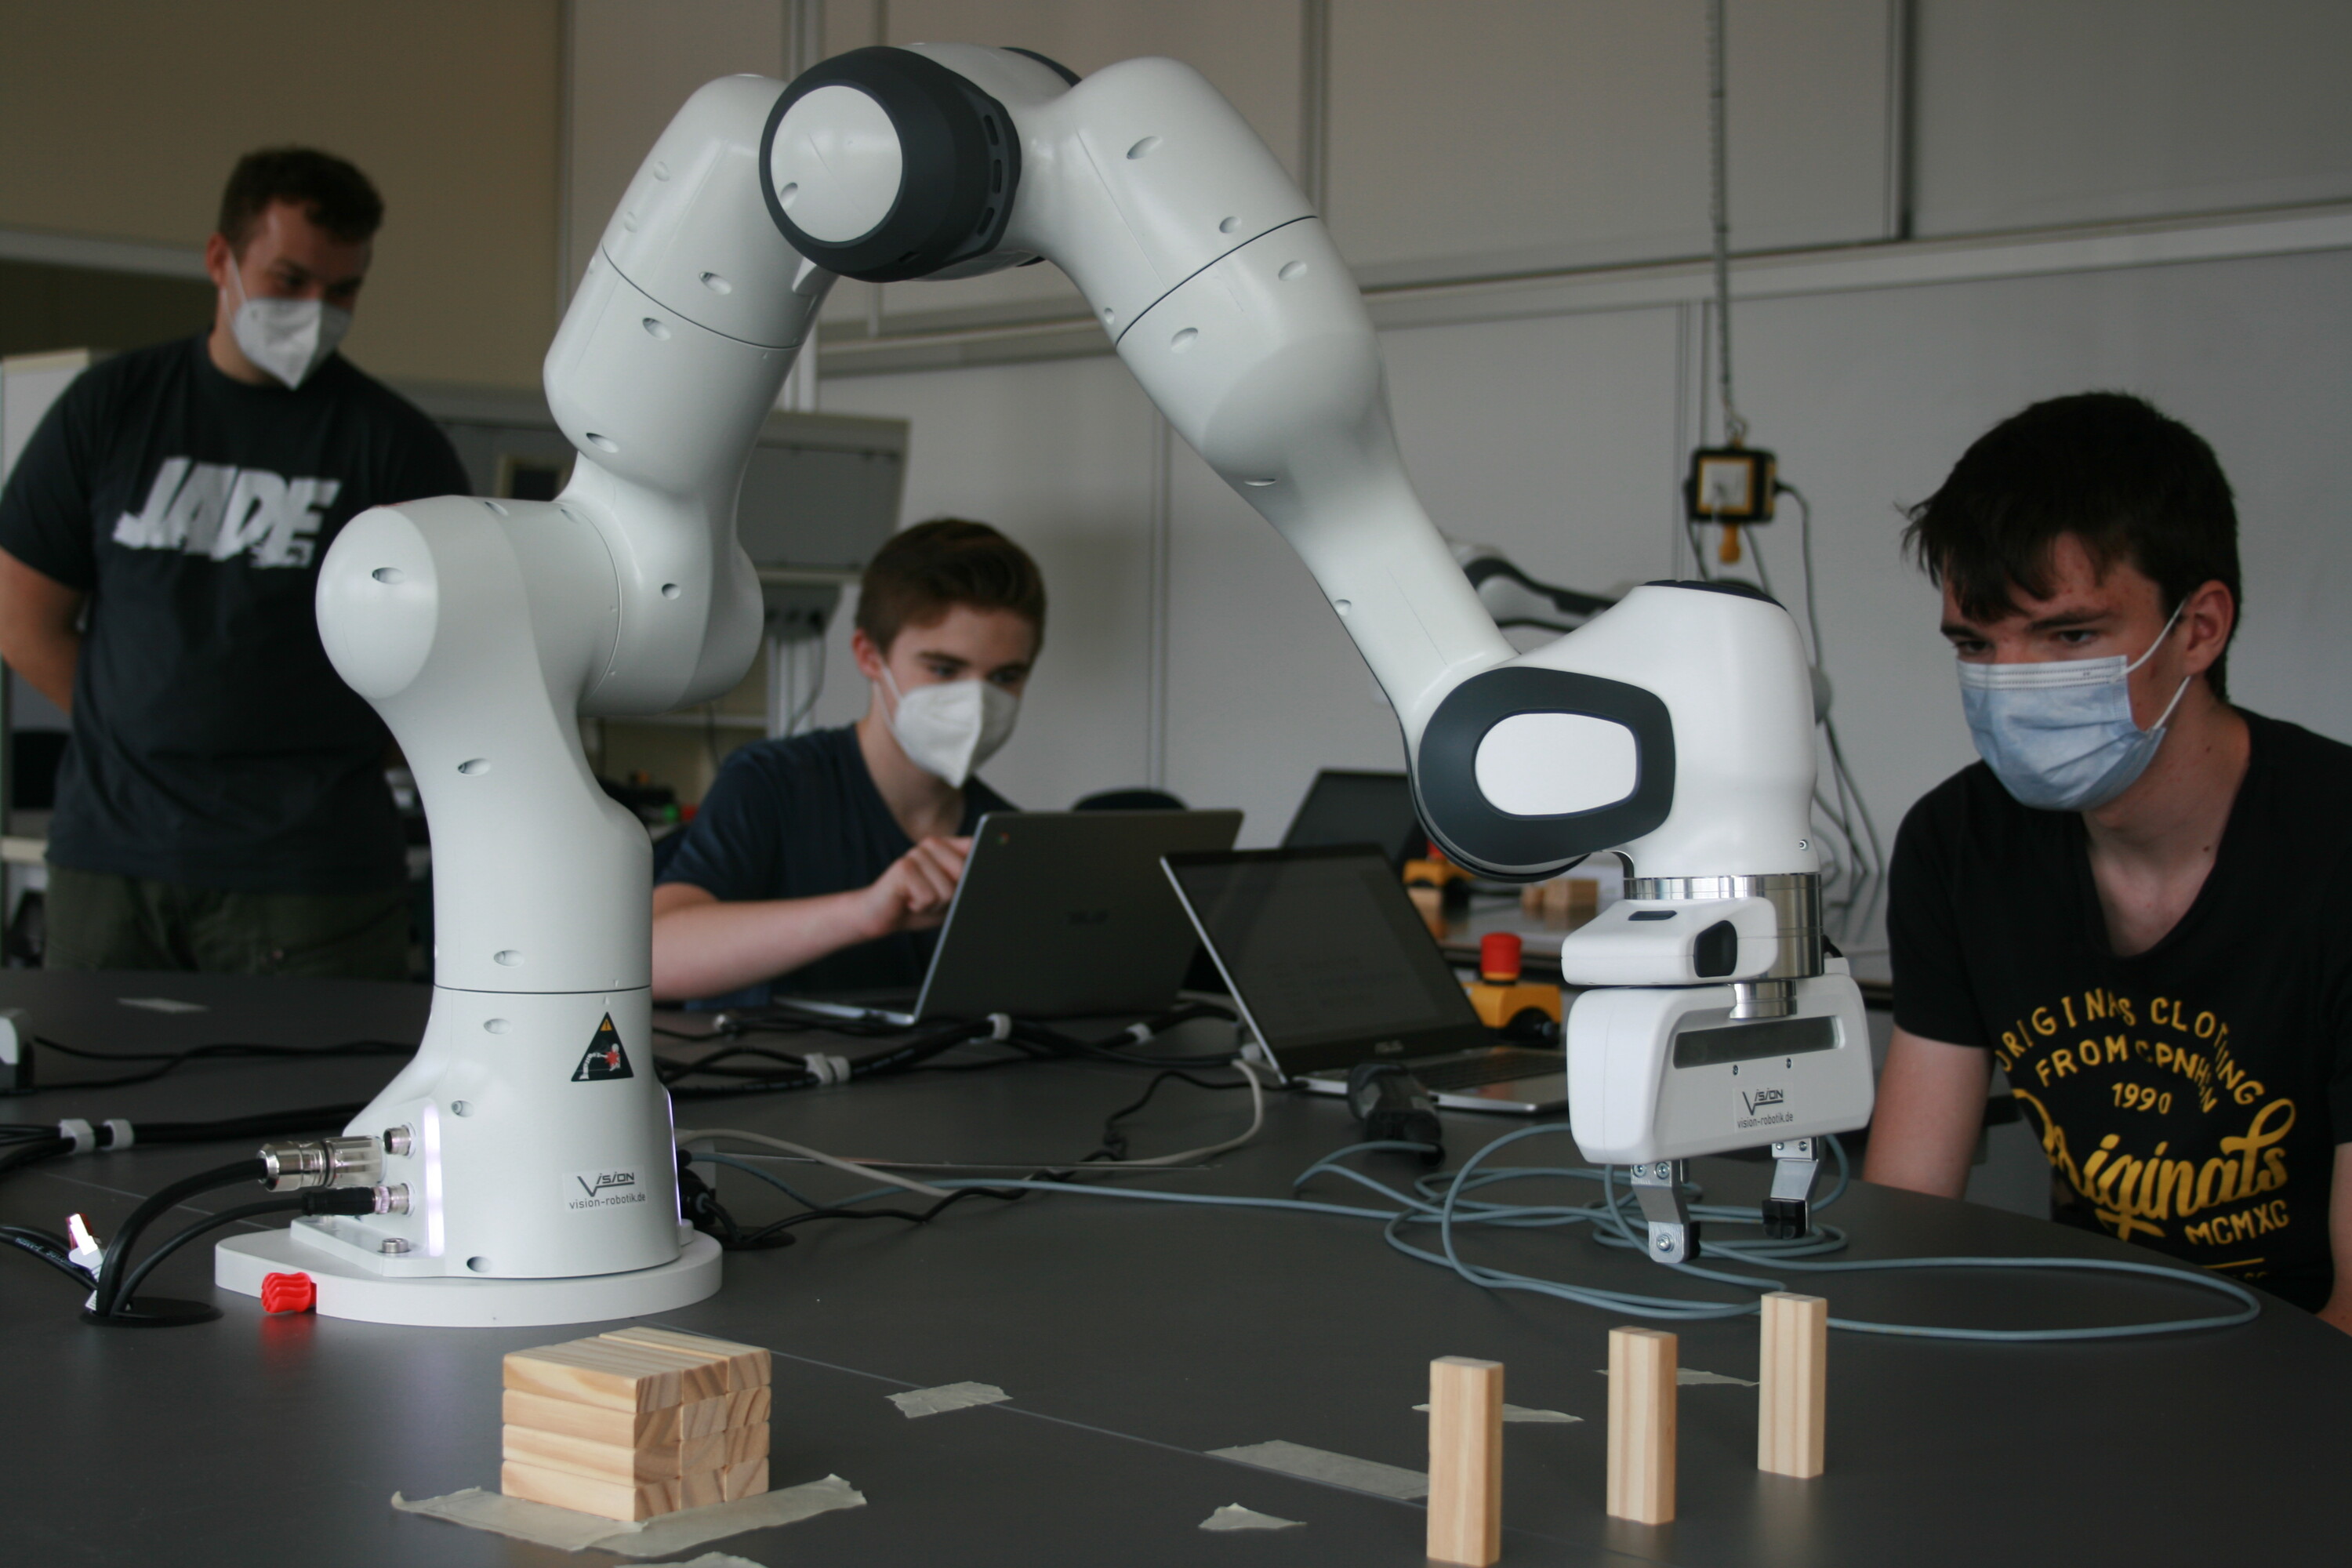 Schüler arbeiten am kollaborierenden Roboter Franka Emika Panda